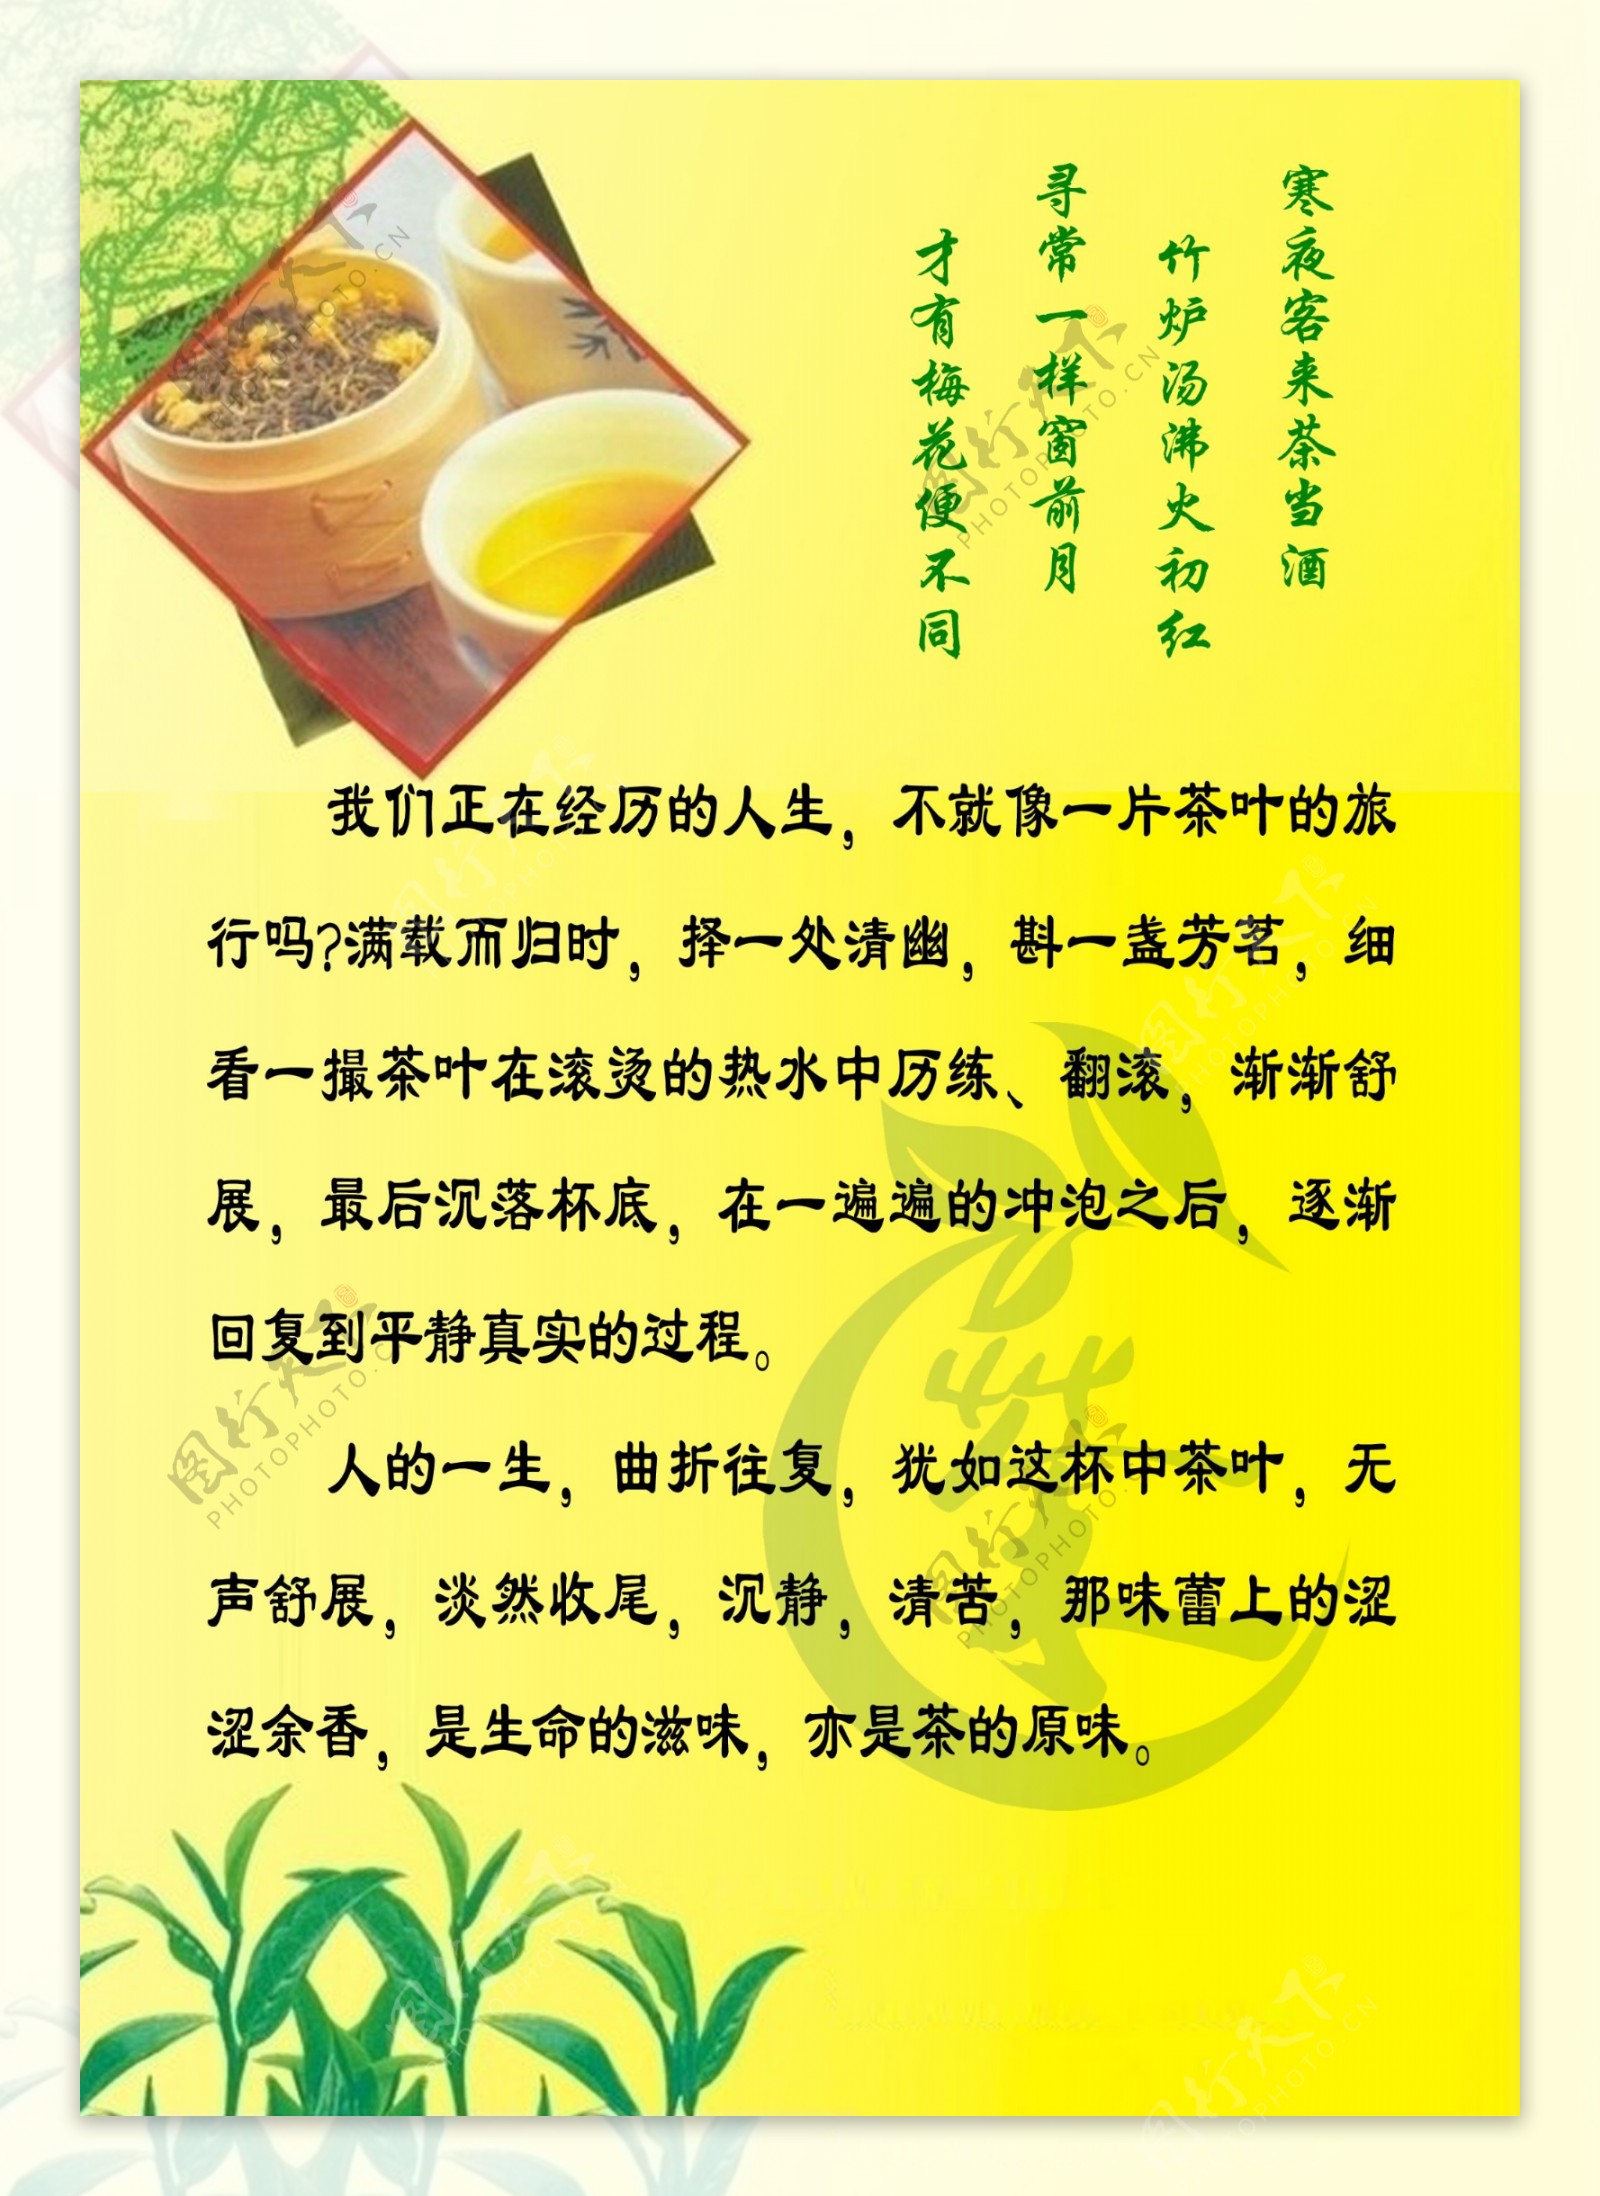 中国文化茶PSD素材